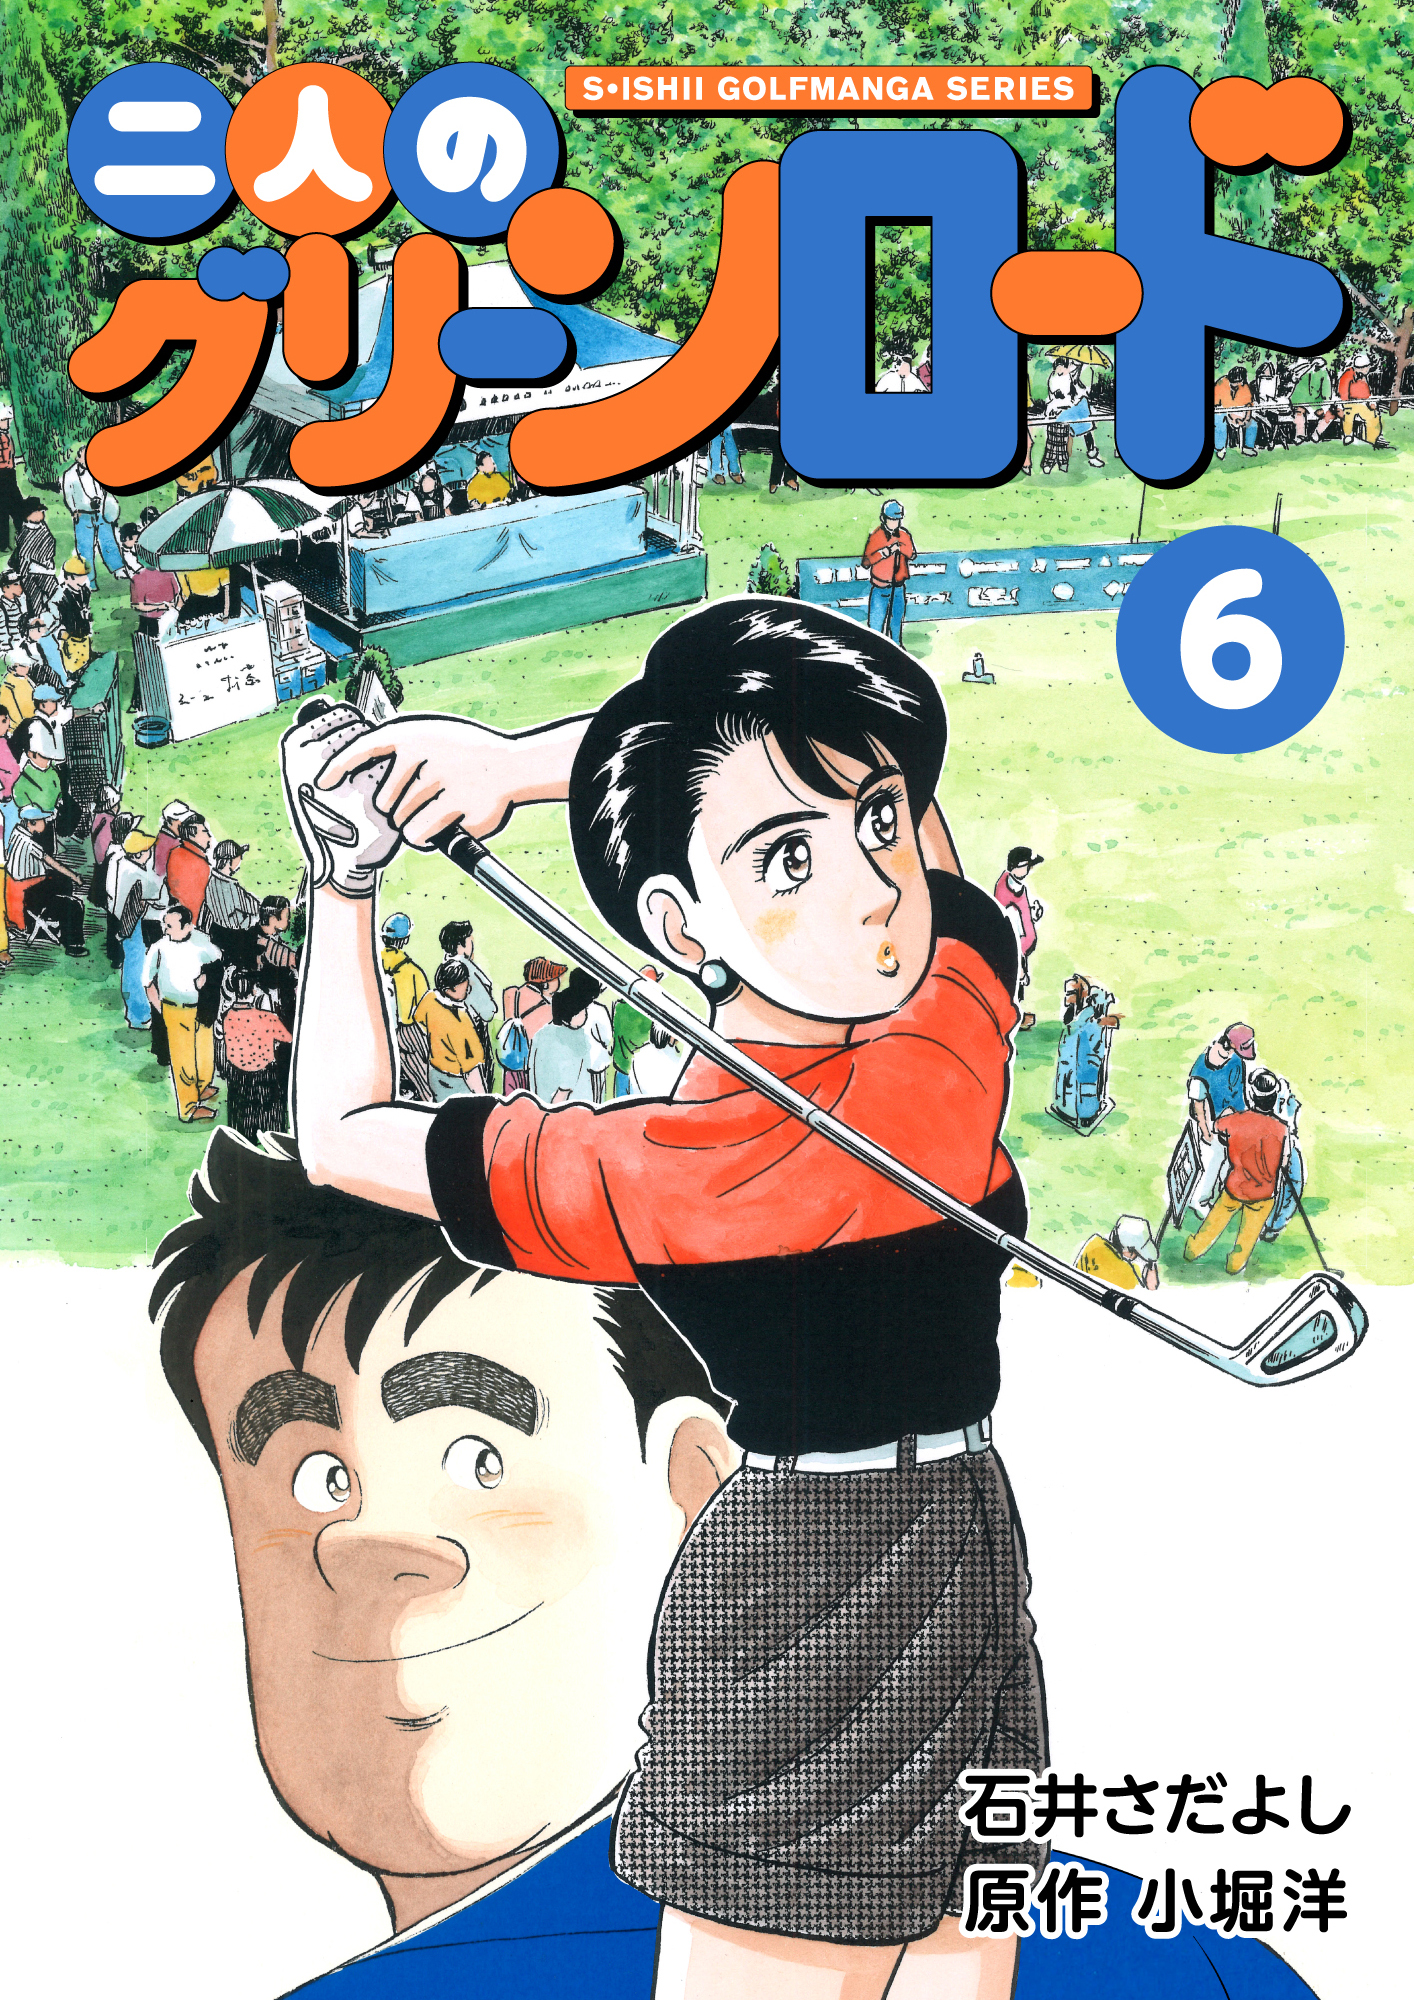 石井さだよしゴルフ漫画シリーズ 二人のグリーンロード 6巻 無料 試し読みなら Amebaマンガ 旧 読書のお時間です